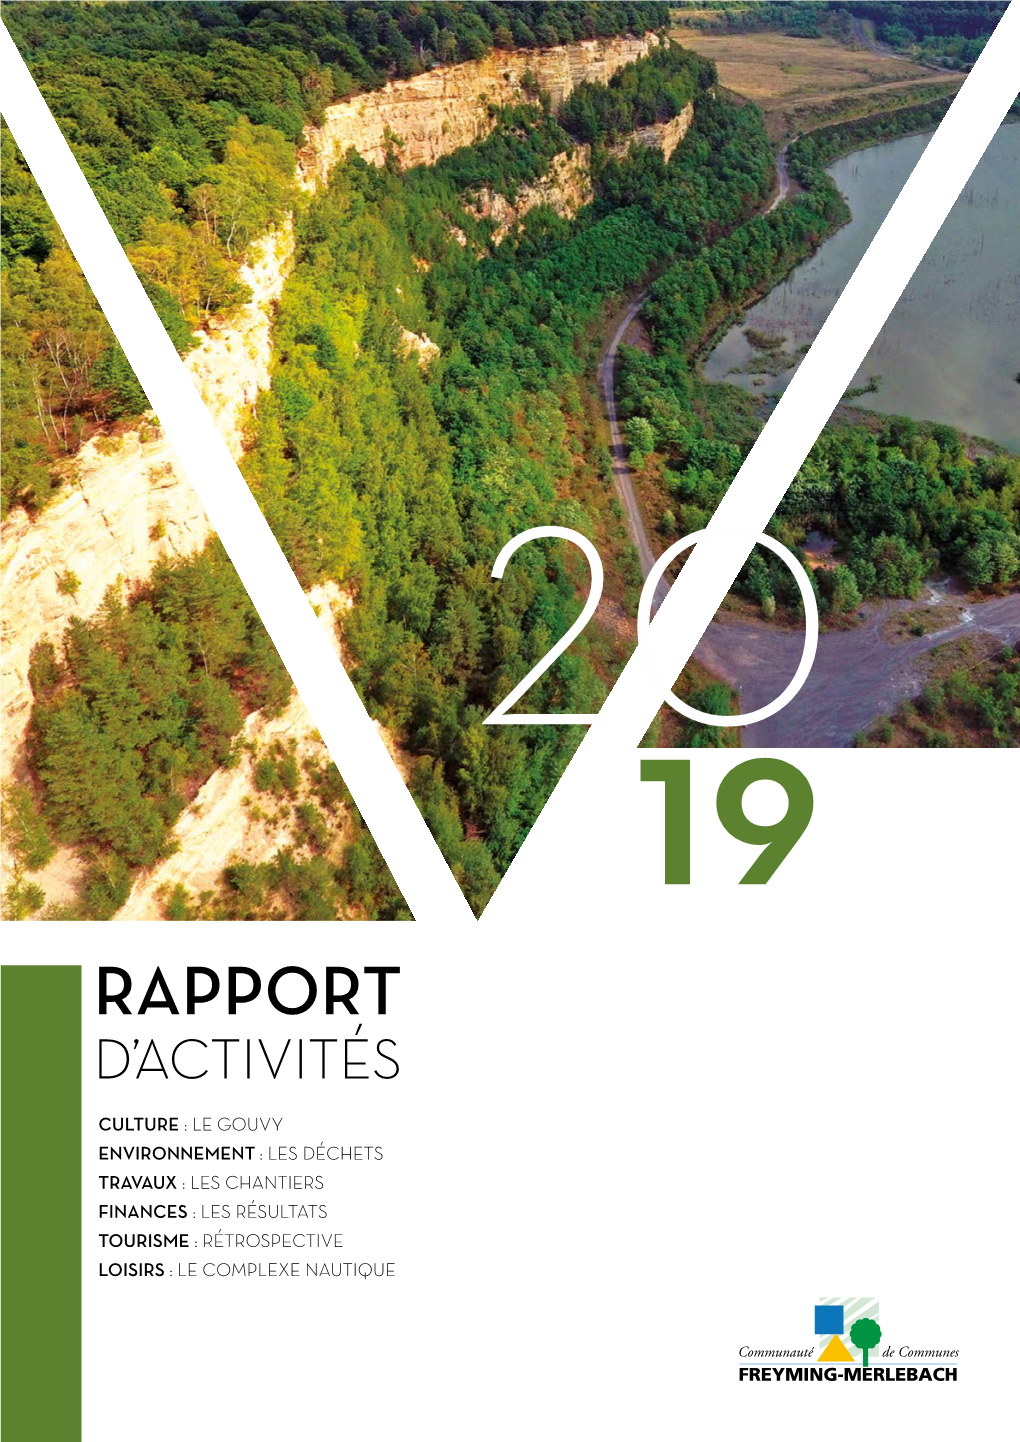 Rapport D'activités 2019